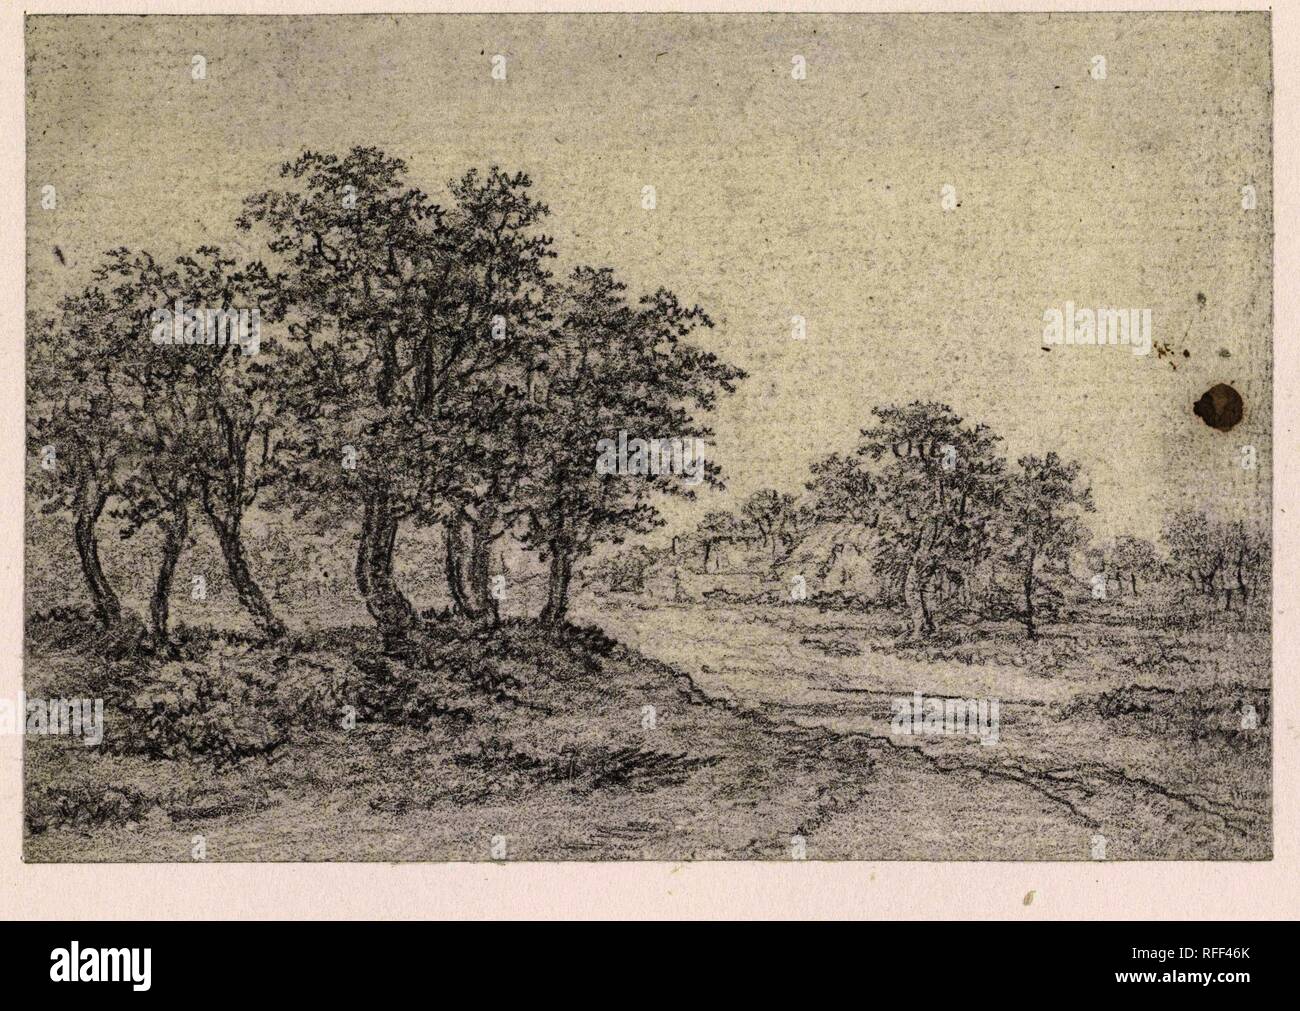 Country Road mit Bauernhof in Sicht. Verfasser der Stellungnahme: Georges Michel. Datierung: 1773 - 1843. Maße: H 68 mm x B 99 mm. Museum: Rijksmuseum, Amsterdam. Stockfoto